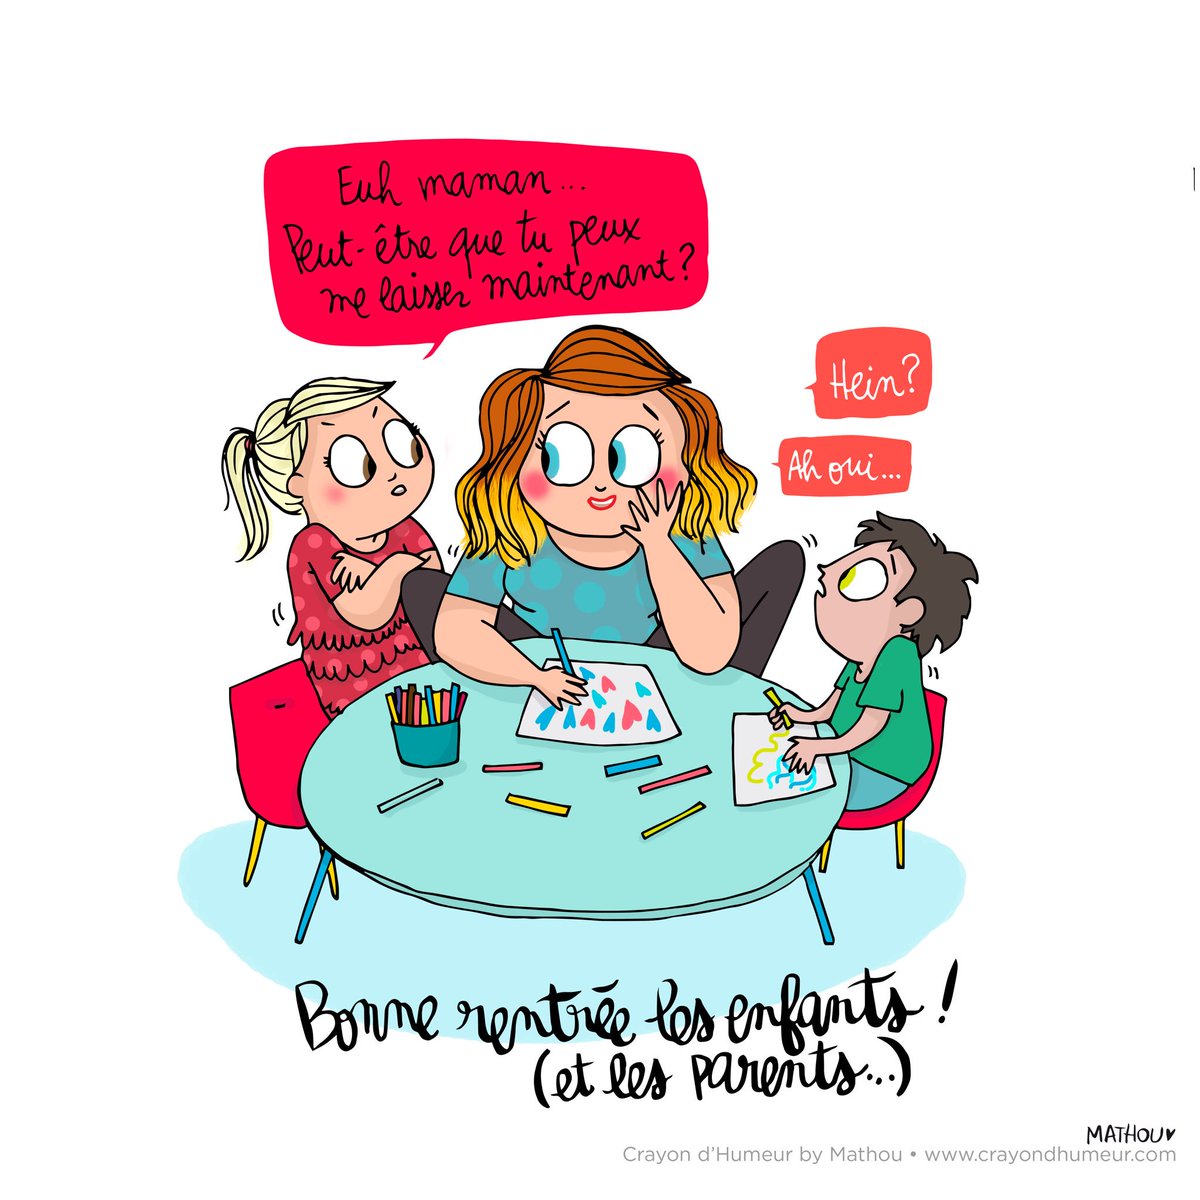 Mathou Virfollet on X: { REINE } #mathou #crayondhumeur #Illustration  #dessin #humour #galette #roi #reine  / X